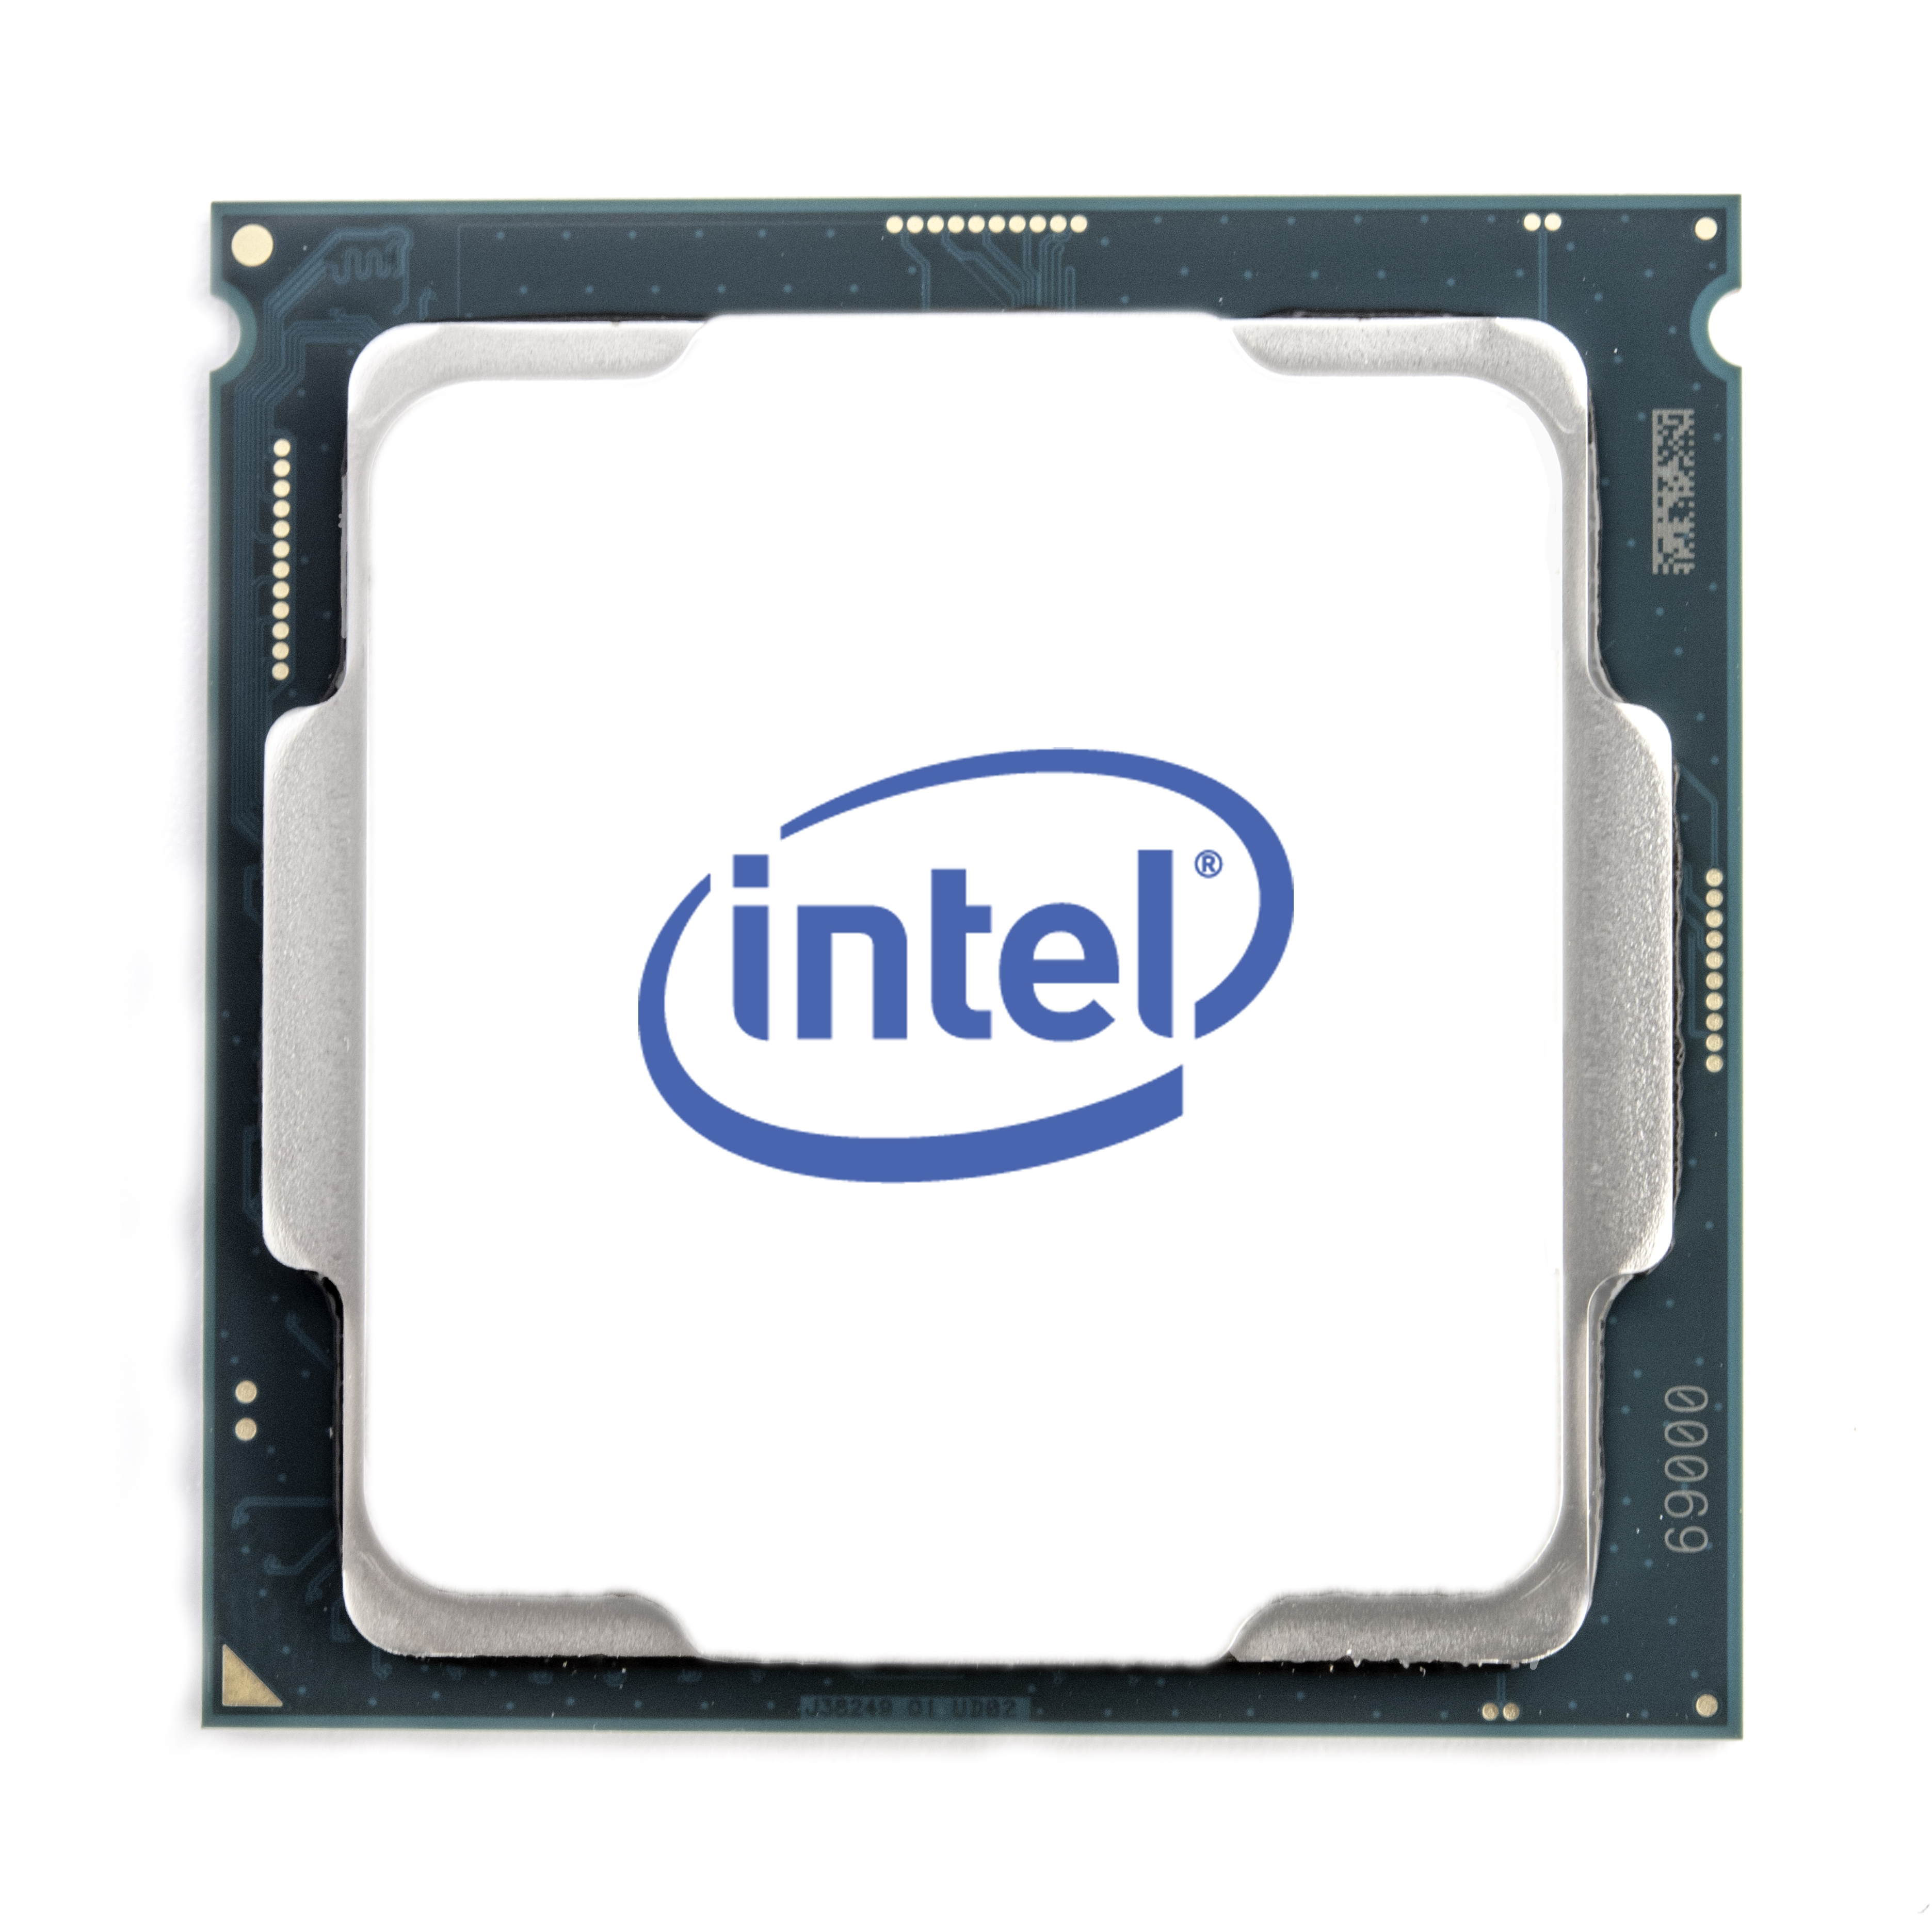 Procesador Intel Ci9-9900 S-1151 8C3.1 Ghz Graficos Uhd630